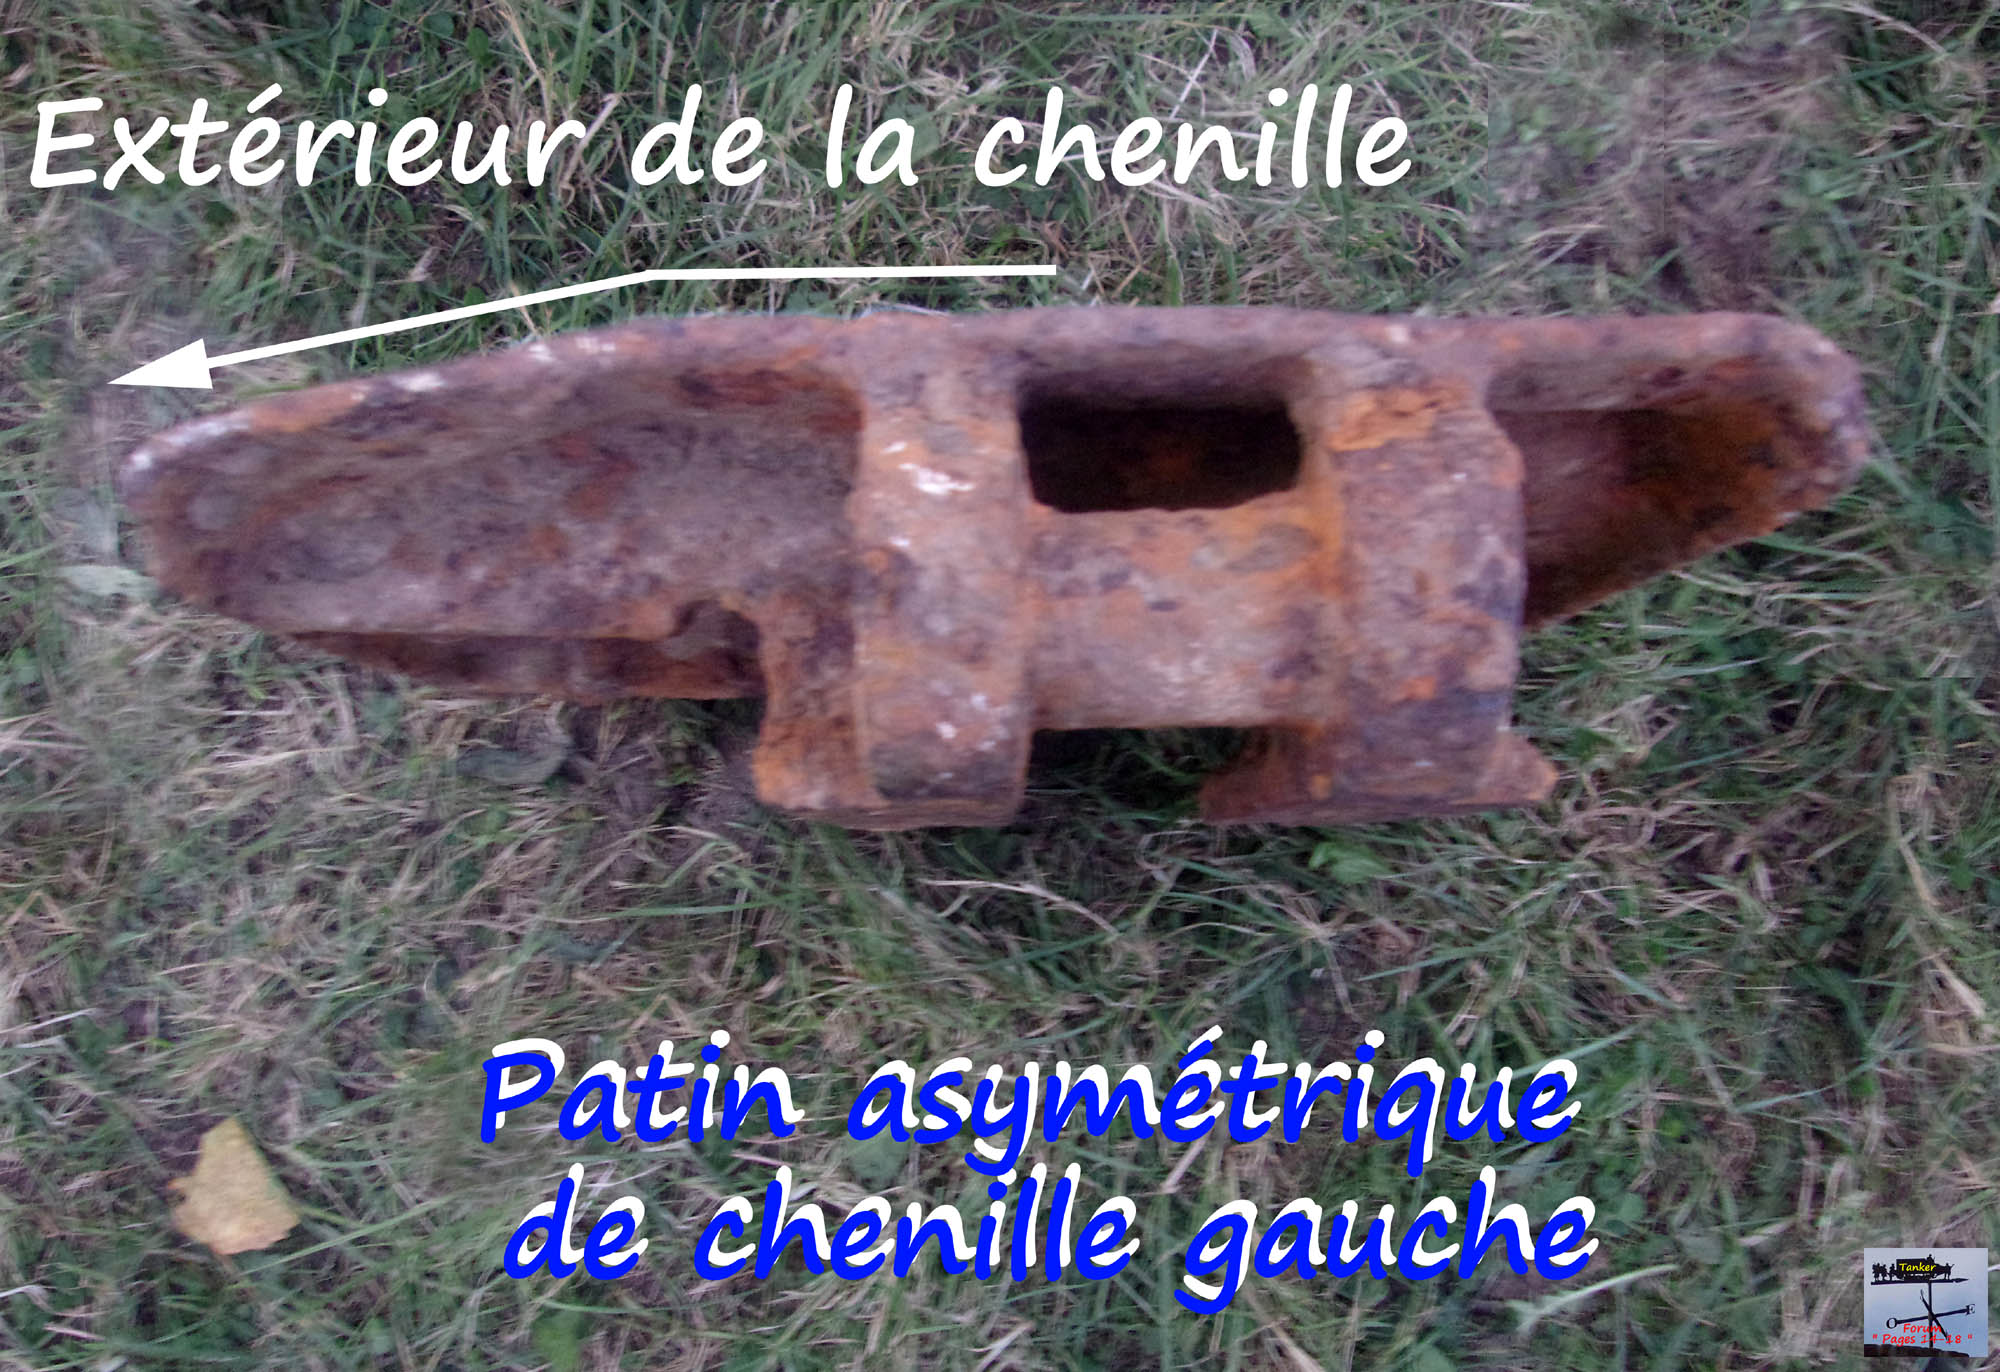 05 - Patin de chenille St Chamond asymétrique.jpg